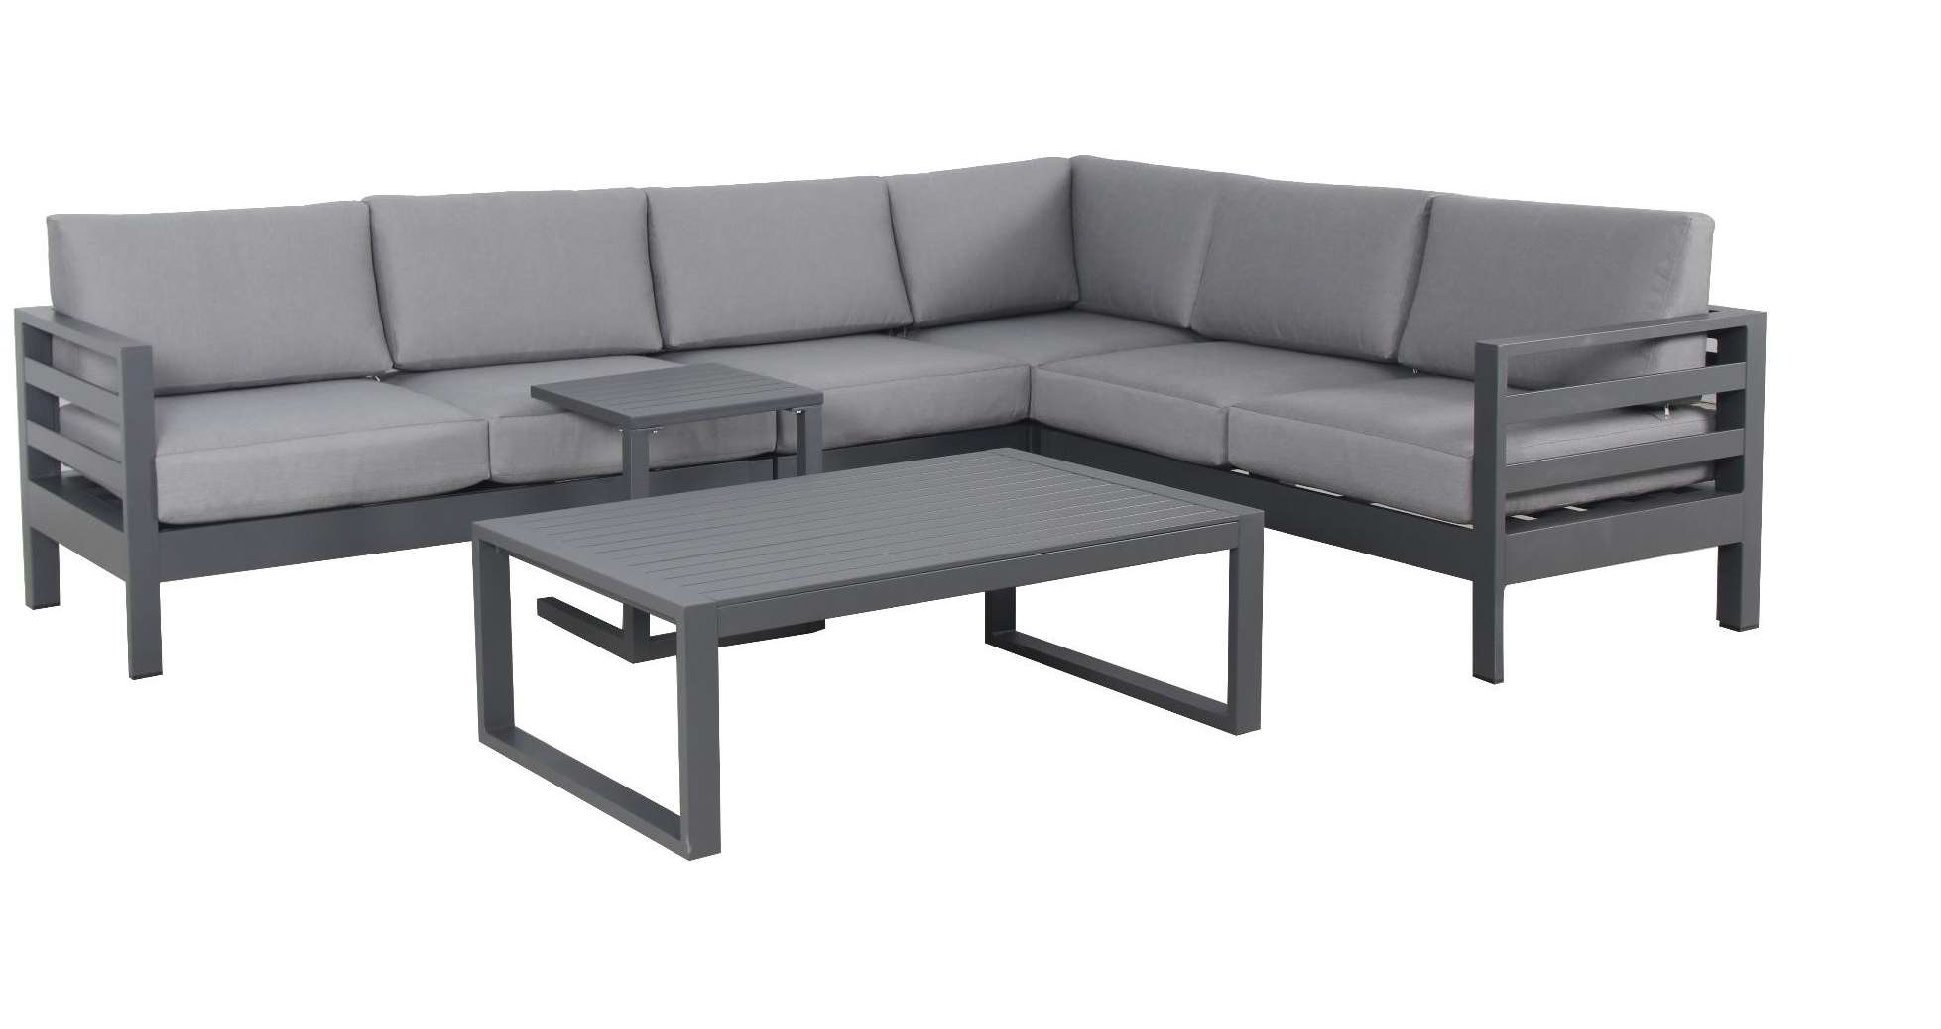 Holland Imports Beta Patio Lounge Set - Grey